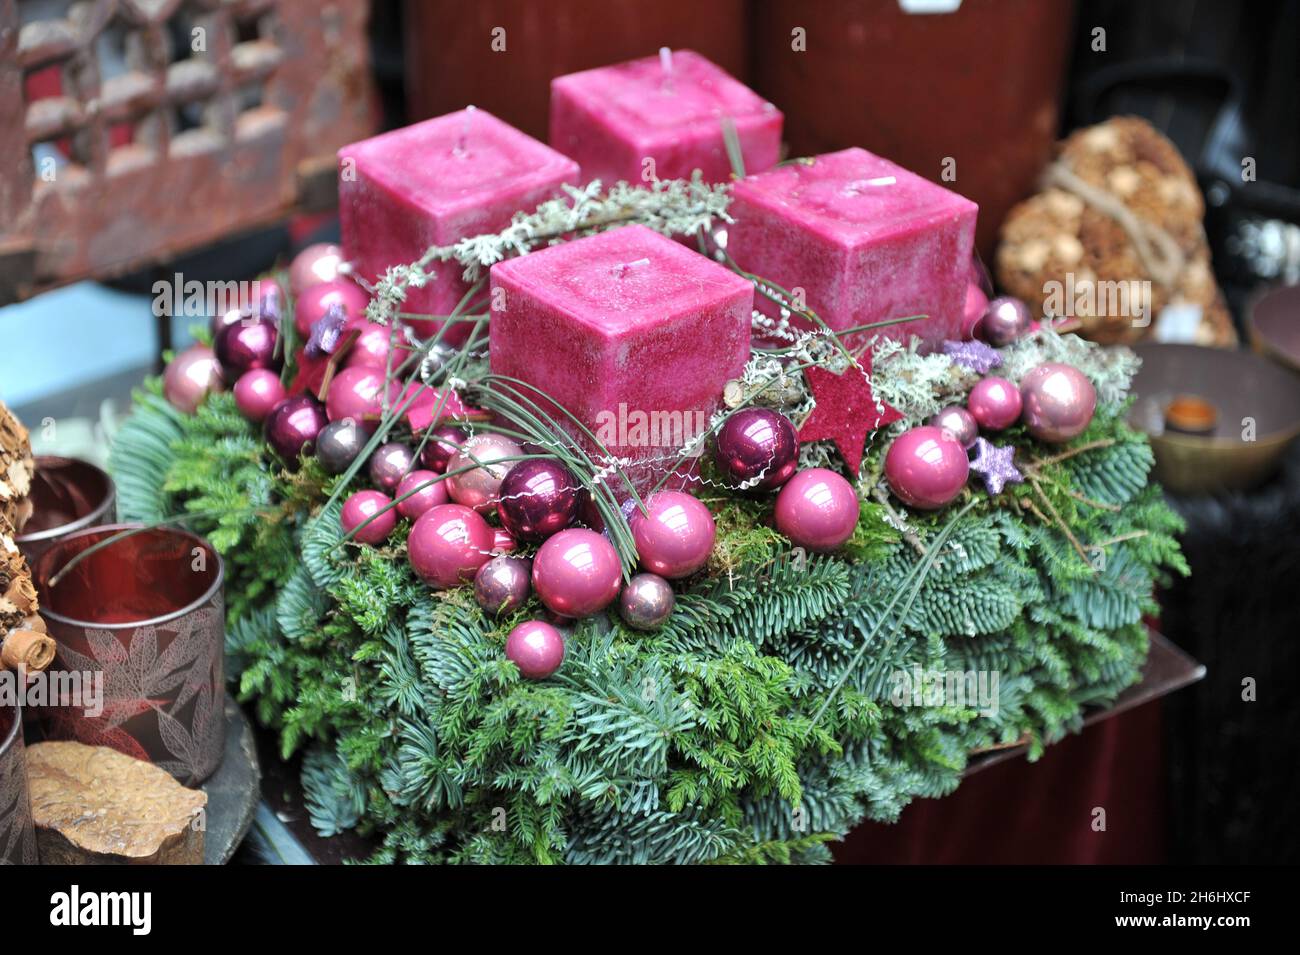 Décoration de Noël à l'intérieur.Une couronne de l'Avent avec quatre bougies roses Banque D'Images